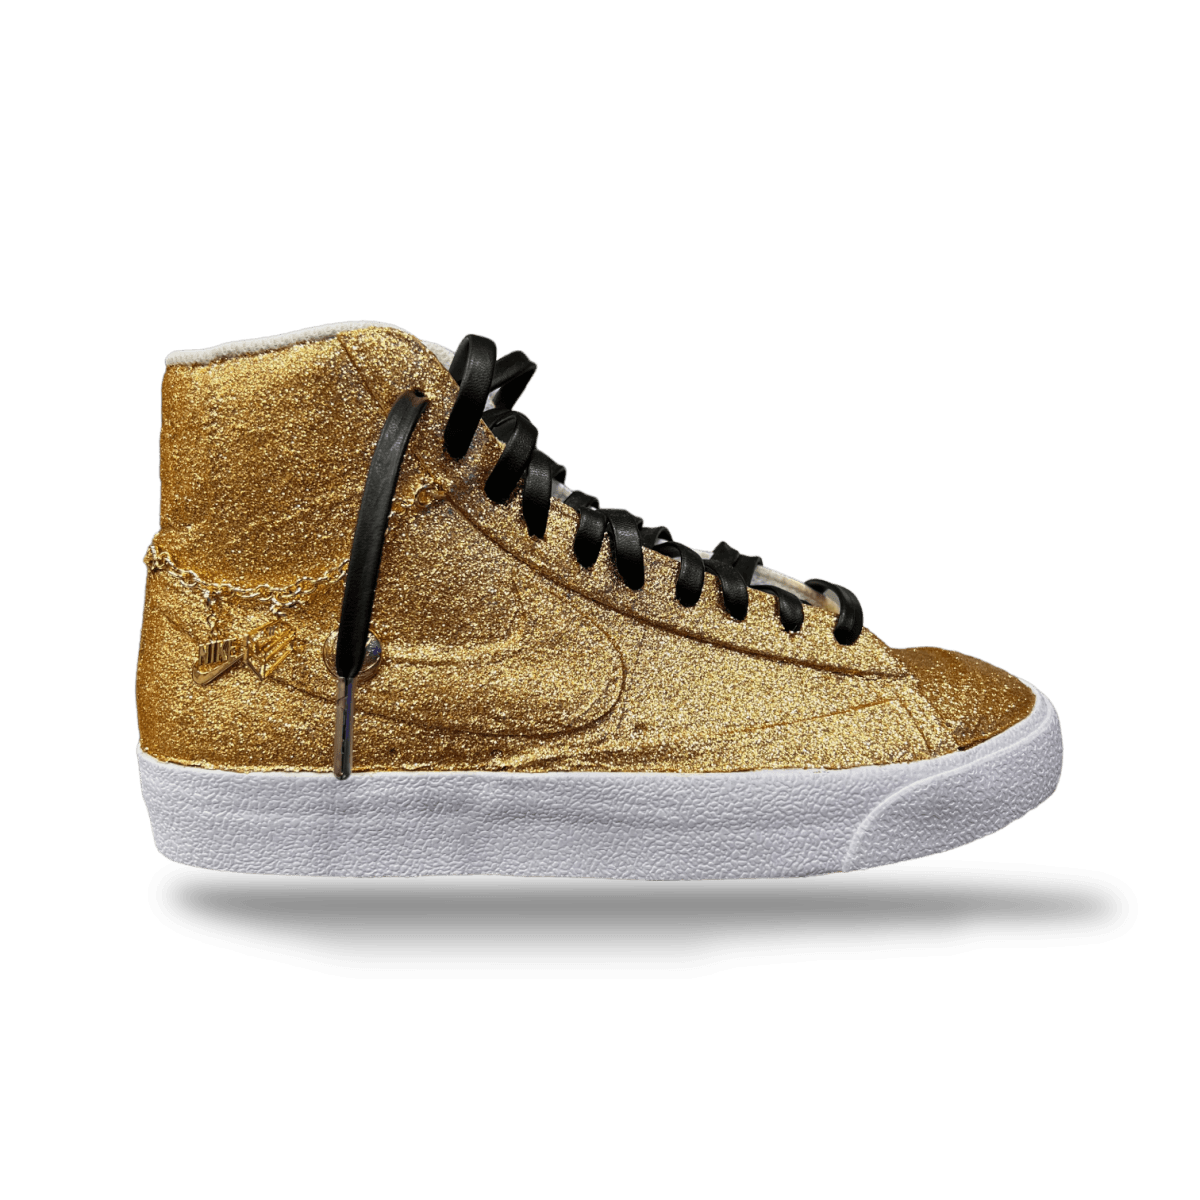 Custom Gold Blazer Mid LX Pendants - Women - Mid Sneaker - Nike - Jawns on Fire